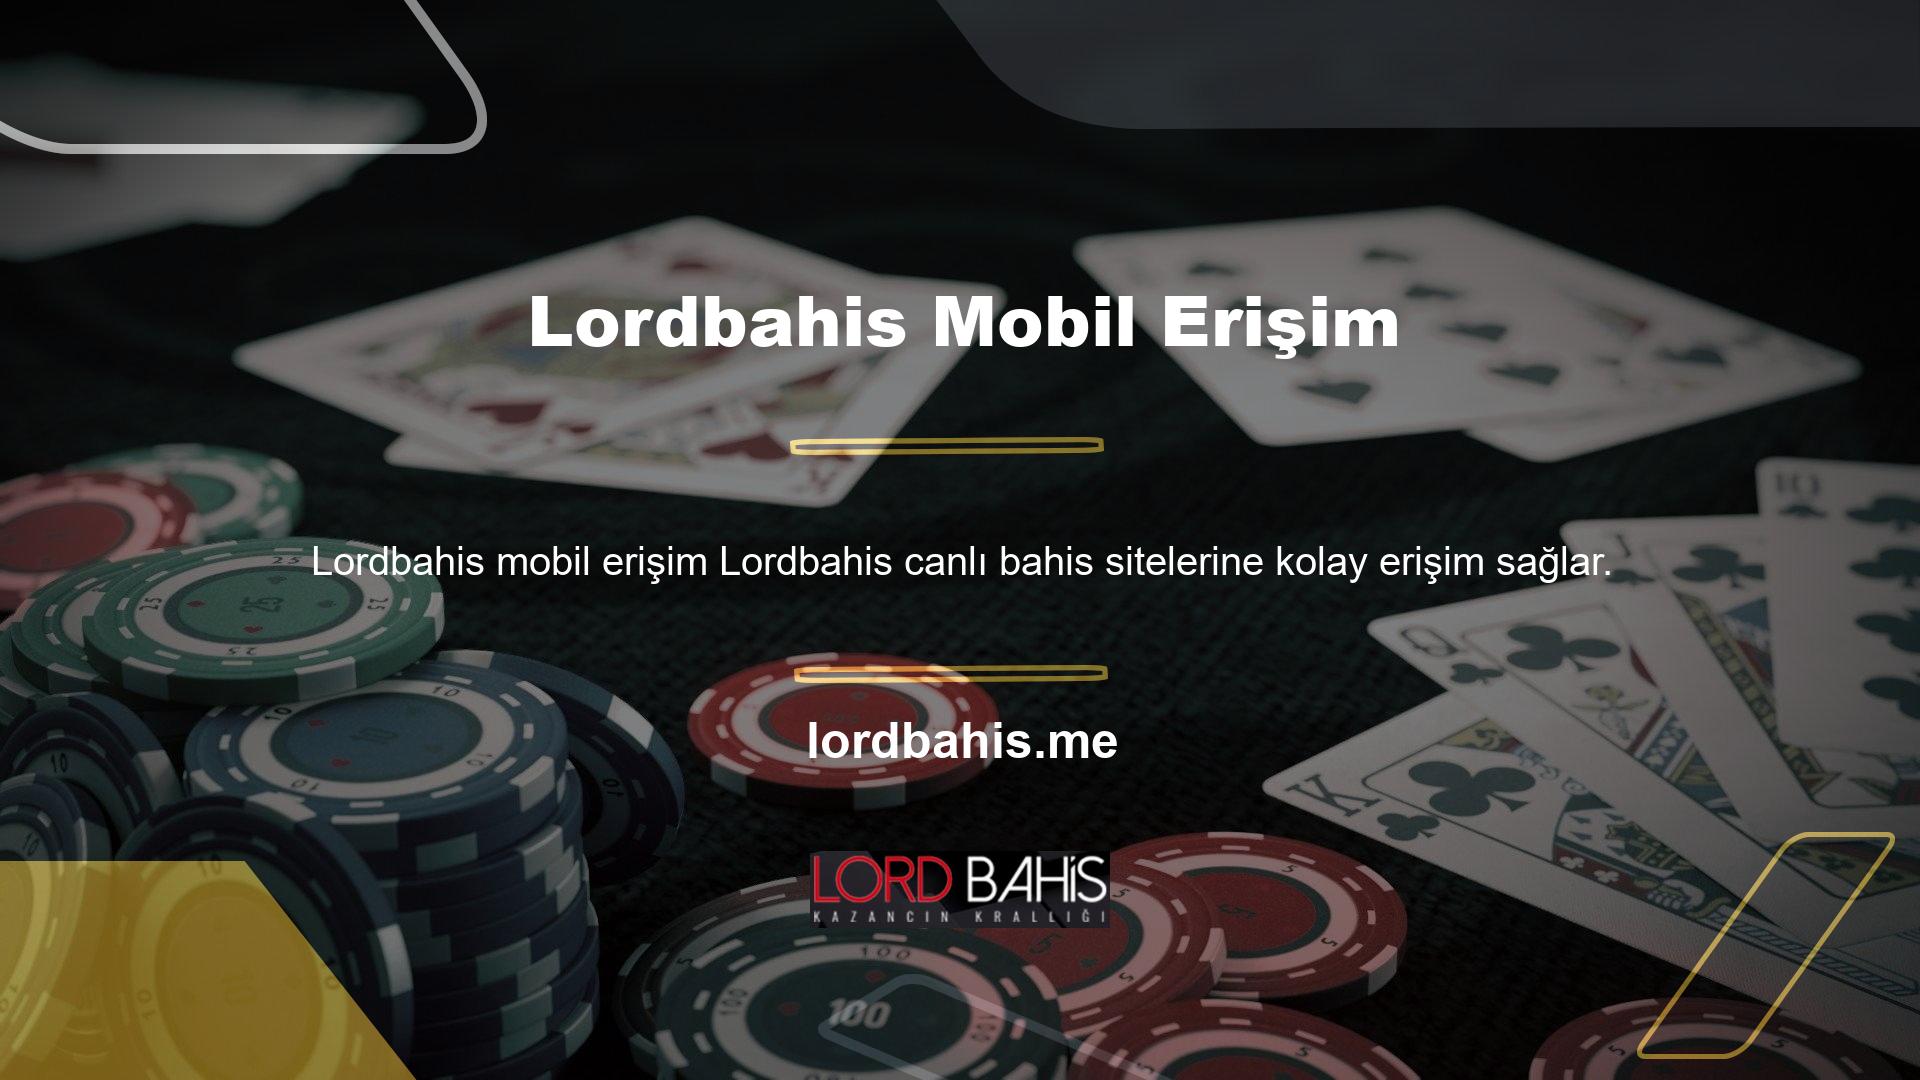 Lordbahis, kullanıcılara akıllı telefonlarından ve tabletlerinden tam erişim sağlar